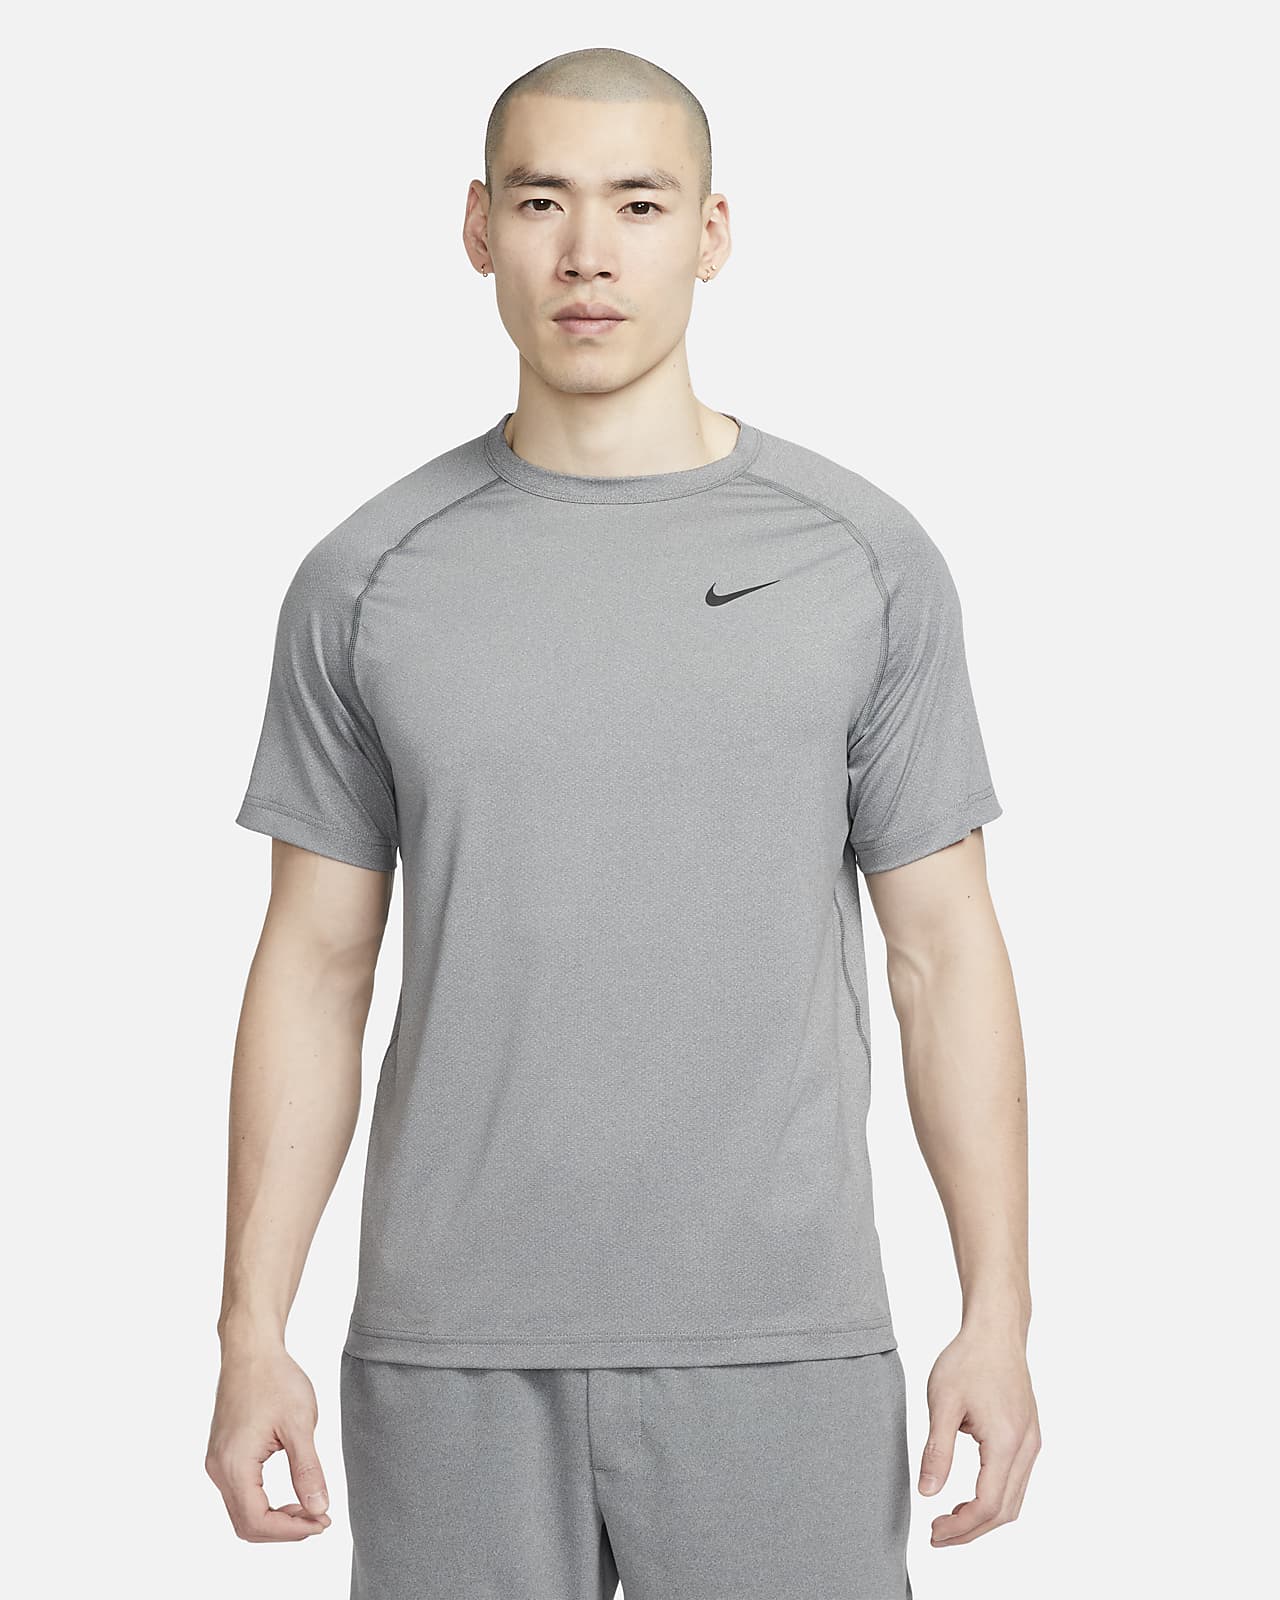 Nike Off-White Men's Short Sleeve Top